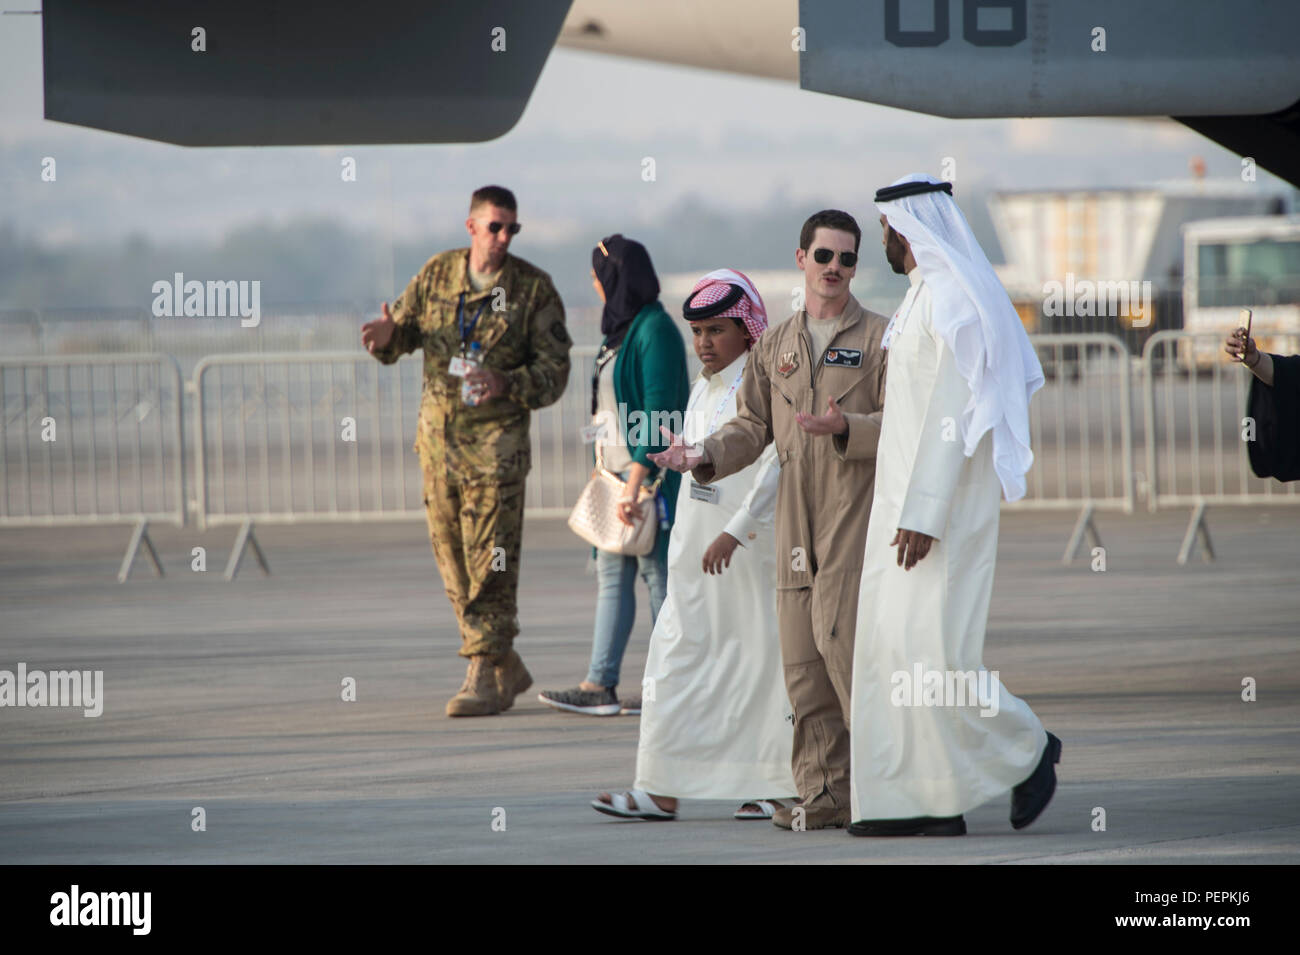 Mitglieder aus den Vereinigten Staaten militärische geben Bahrain airshow Gäste eine Tour von U.S.military Flugzeuge während der Internationalen Luftfahrtausstellung in Bahrain in Sakhir Airbase in Manama, Bahrain, Jan. 21, 2016. Die Bahrain International Airshow 2016 kennzeichnete eine Vielzahl von US-Militär Flugzeuge durch statische Displays, einschließlich: F-15 E Strike Eagle, C2 Greyhound, F-18 E/F Hornet, MV-22 Osprey, AV-8B Harrier, F/18 C/D Hornet, und MH-60 Seahawk und MH-53 Sea Dragon Hubschrauber. (U.S. Air Force Foto: Staff Sgt. Corey Haken/Freigegeben) Stockfoto